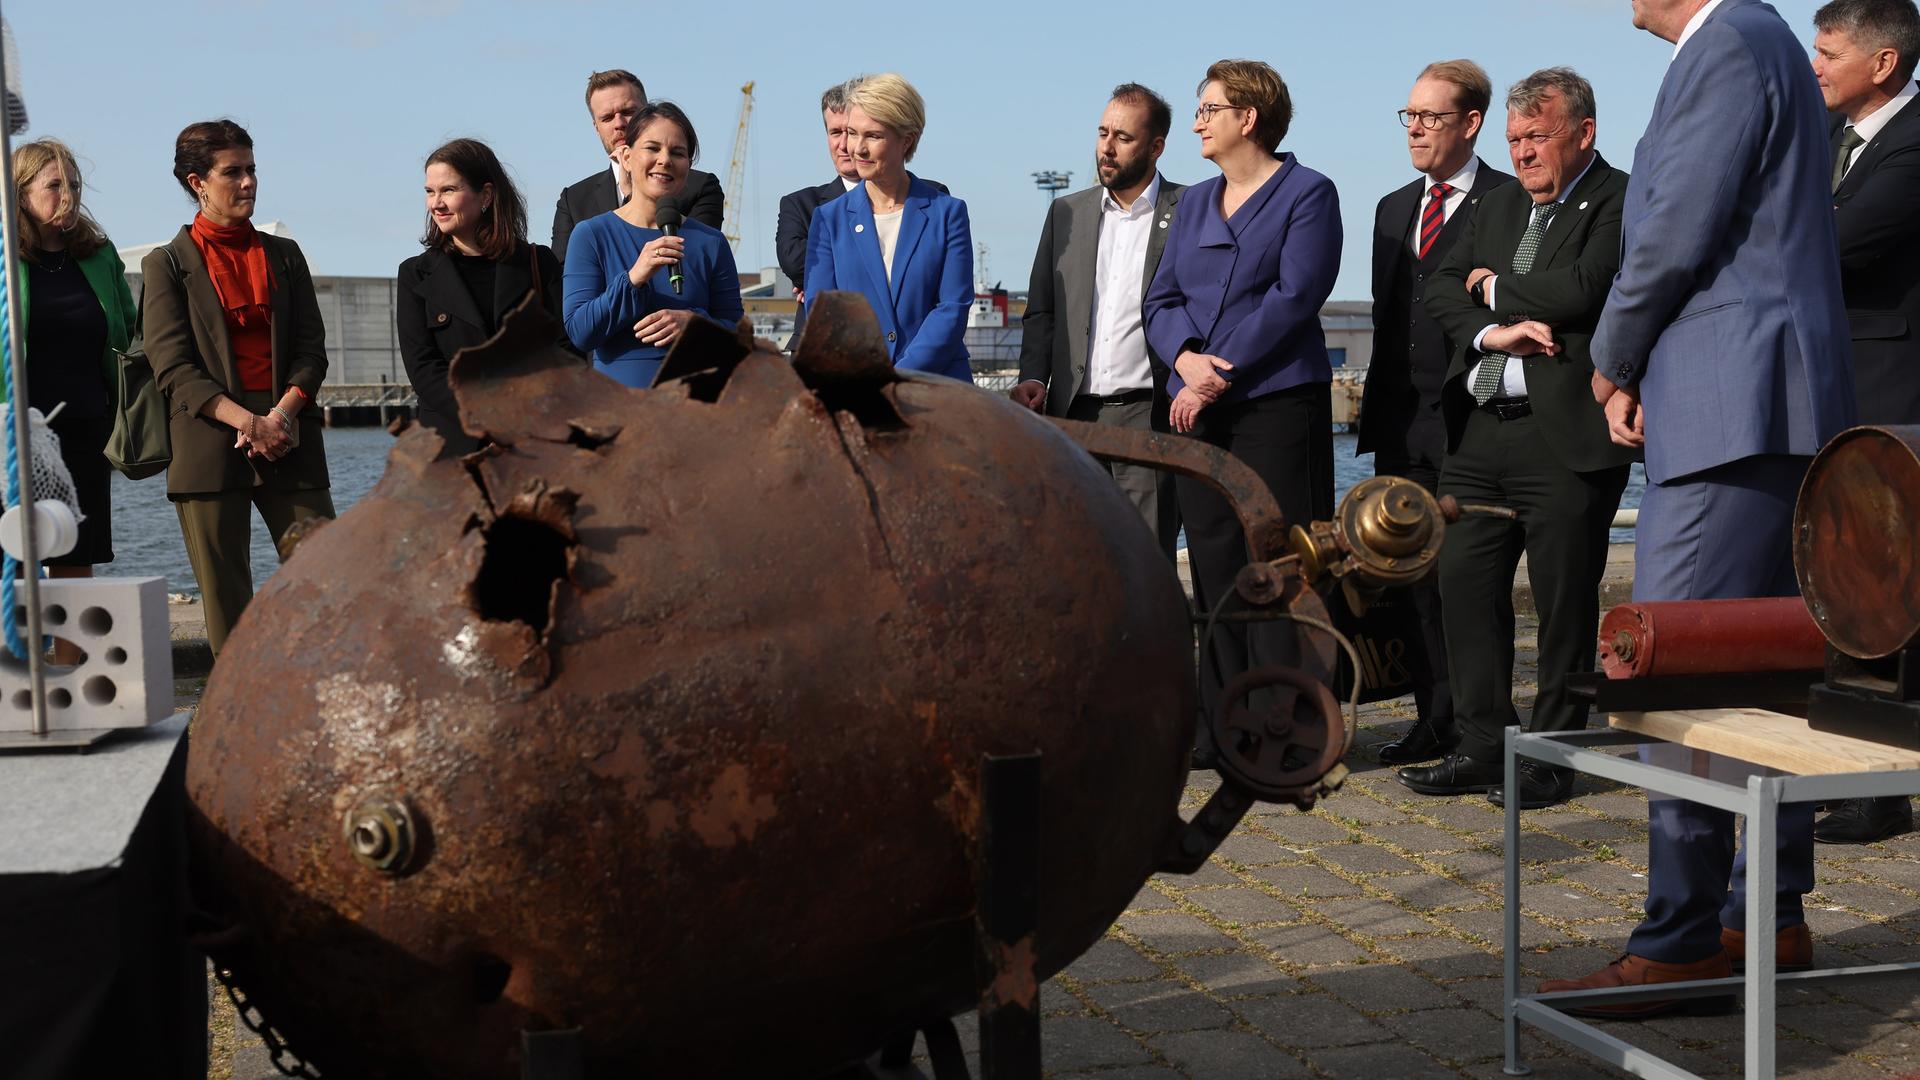 Außenministerin Baerbock erklärt am Mikrofon im Hafen von Wismar die Funktionsweise einer Wassermine aus dem 1. Weltkrieg.